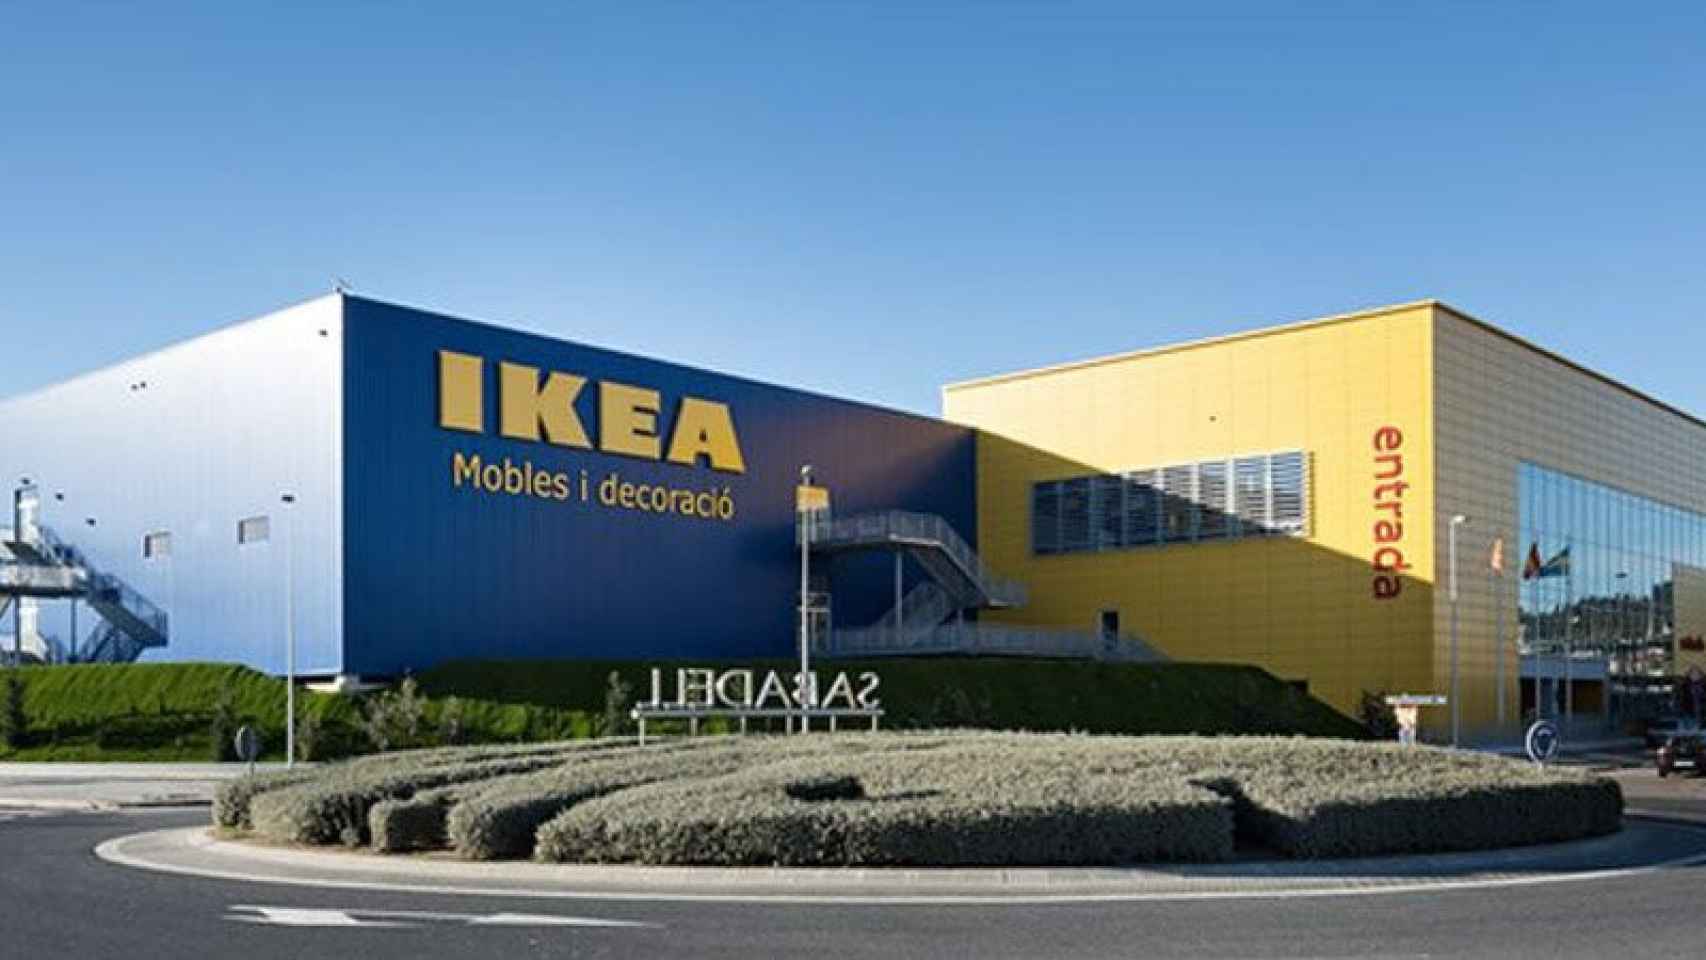 Establecimiento Ikea en la ciudad de Sabadell (Barcelona)